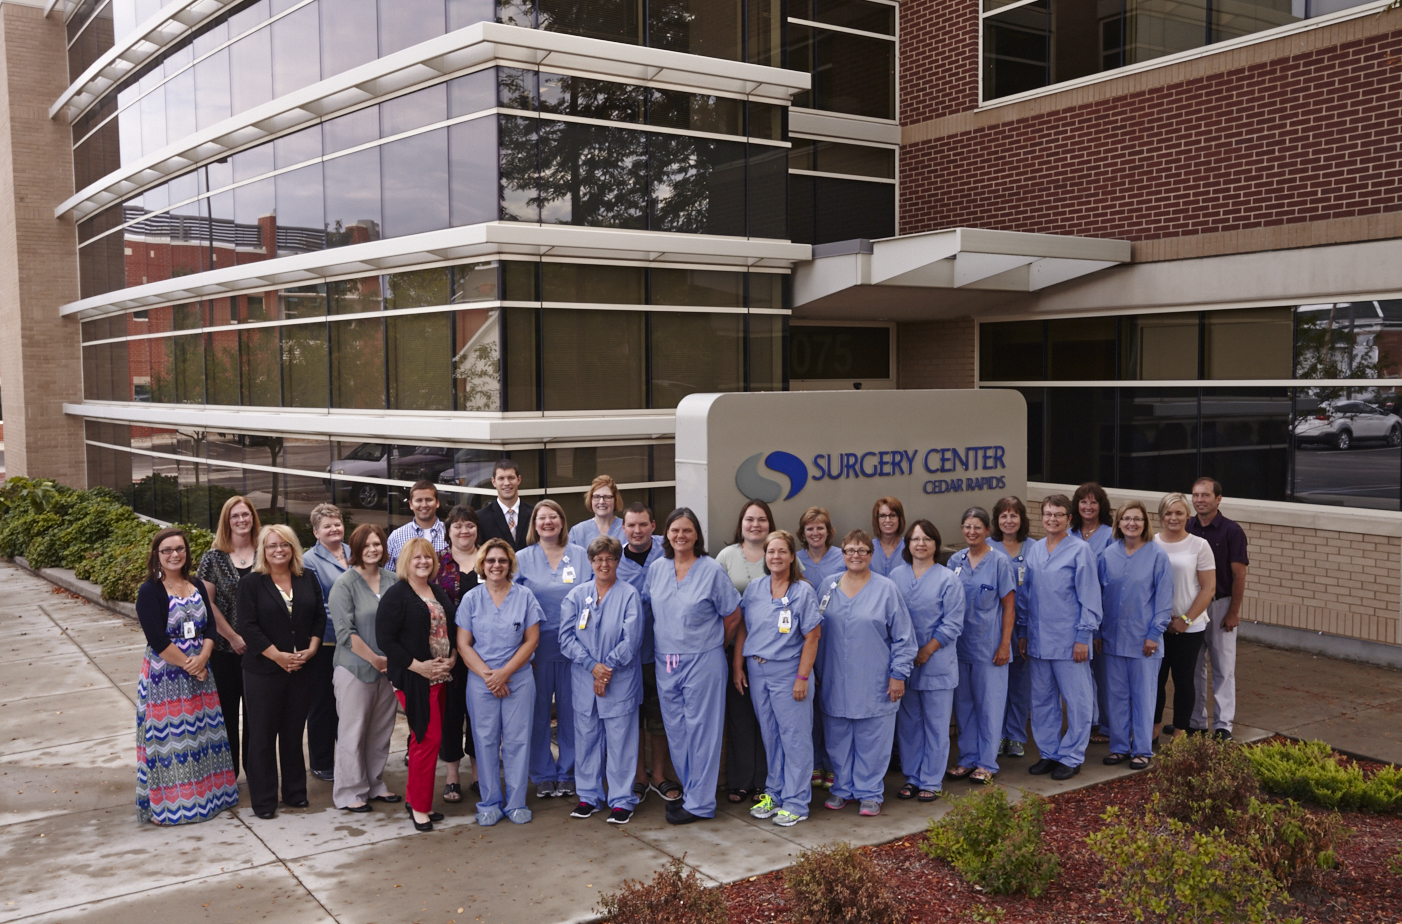 Surgery Center Cedar Rapids in Cedar Rapids, Iowa